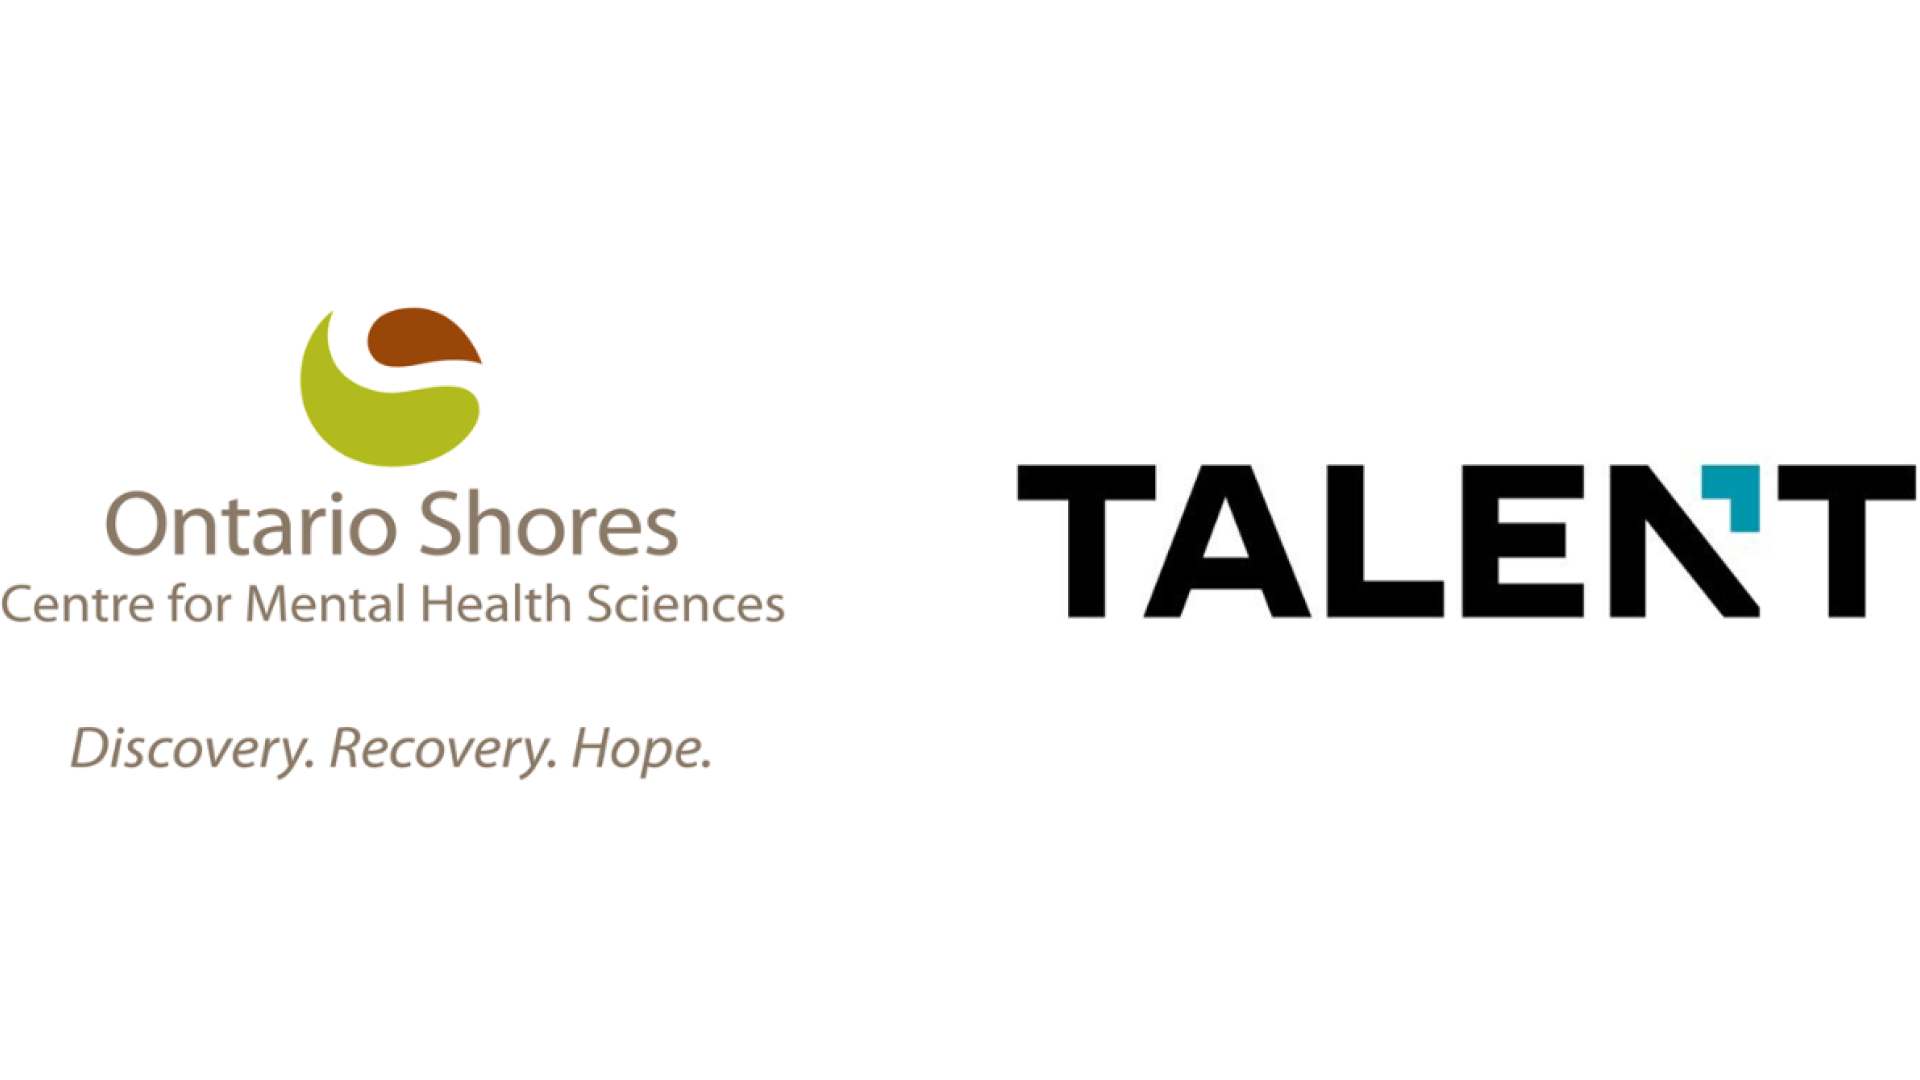 Ontario Shores and Talent logos